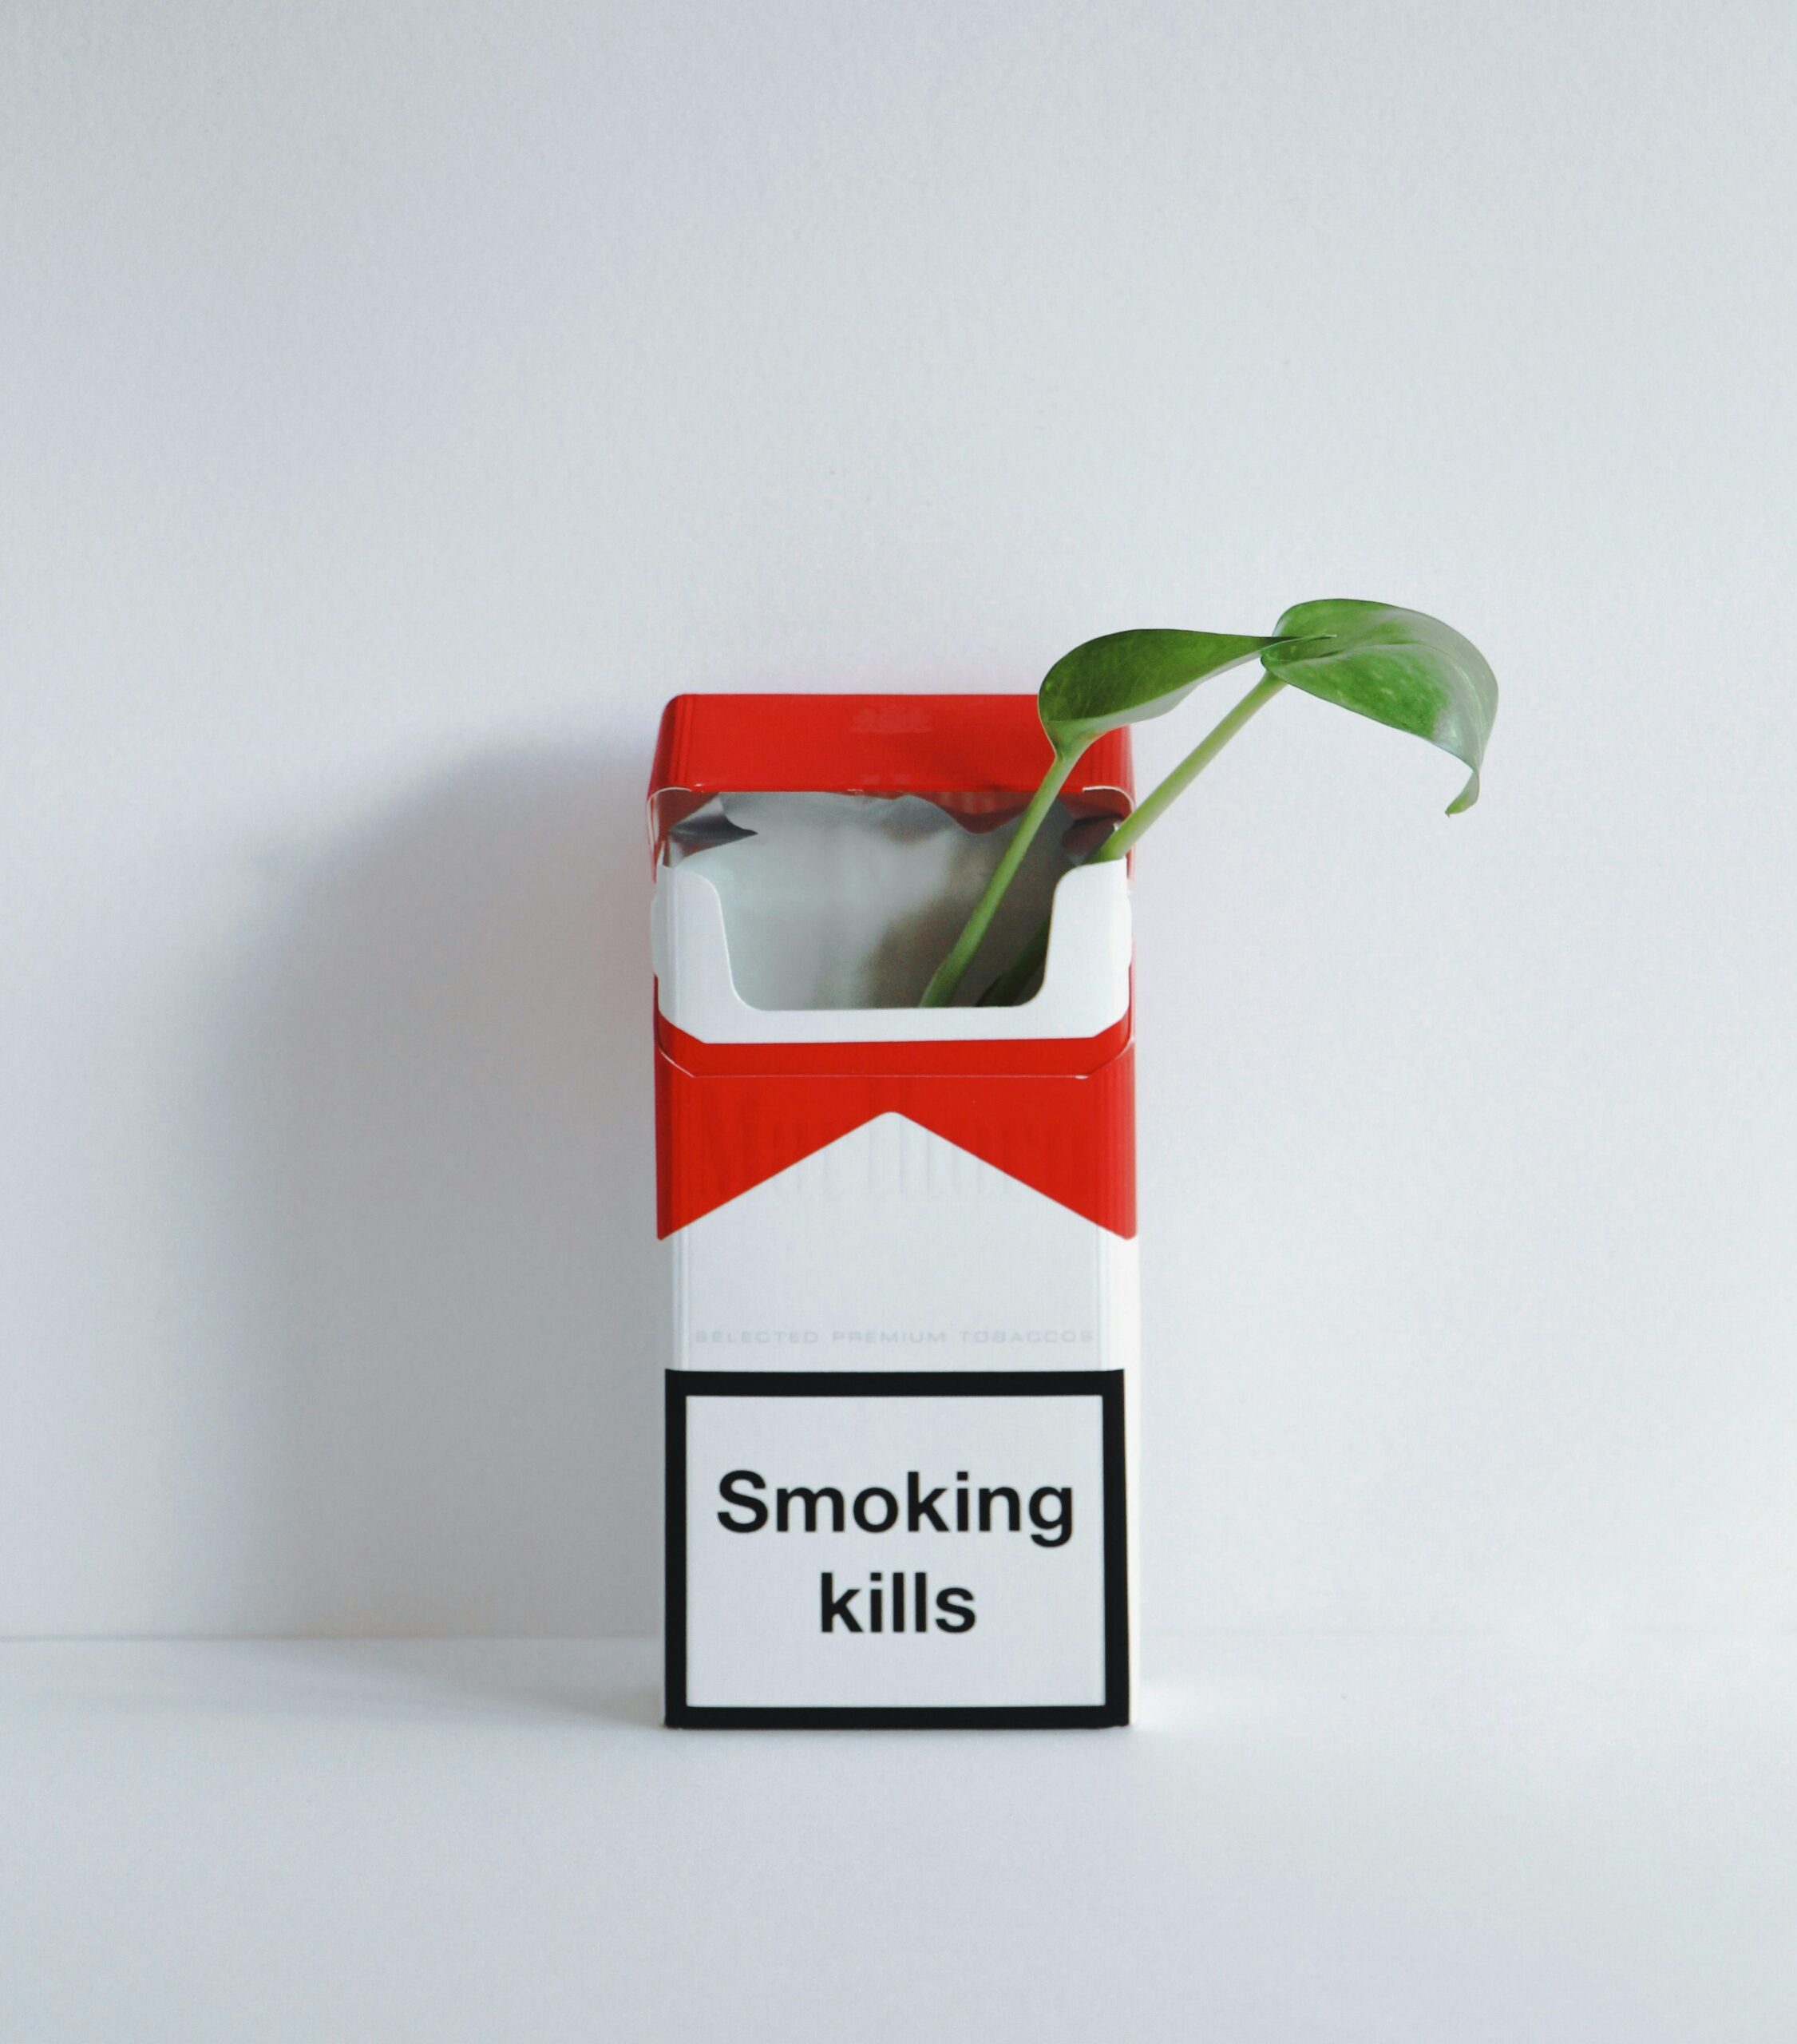 Mieux comprendre le plant de tabac pour mieux comprendre le cigare